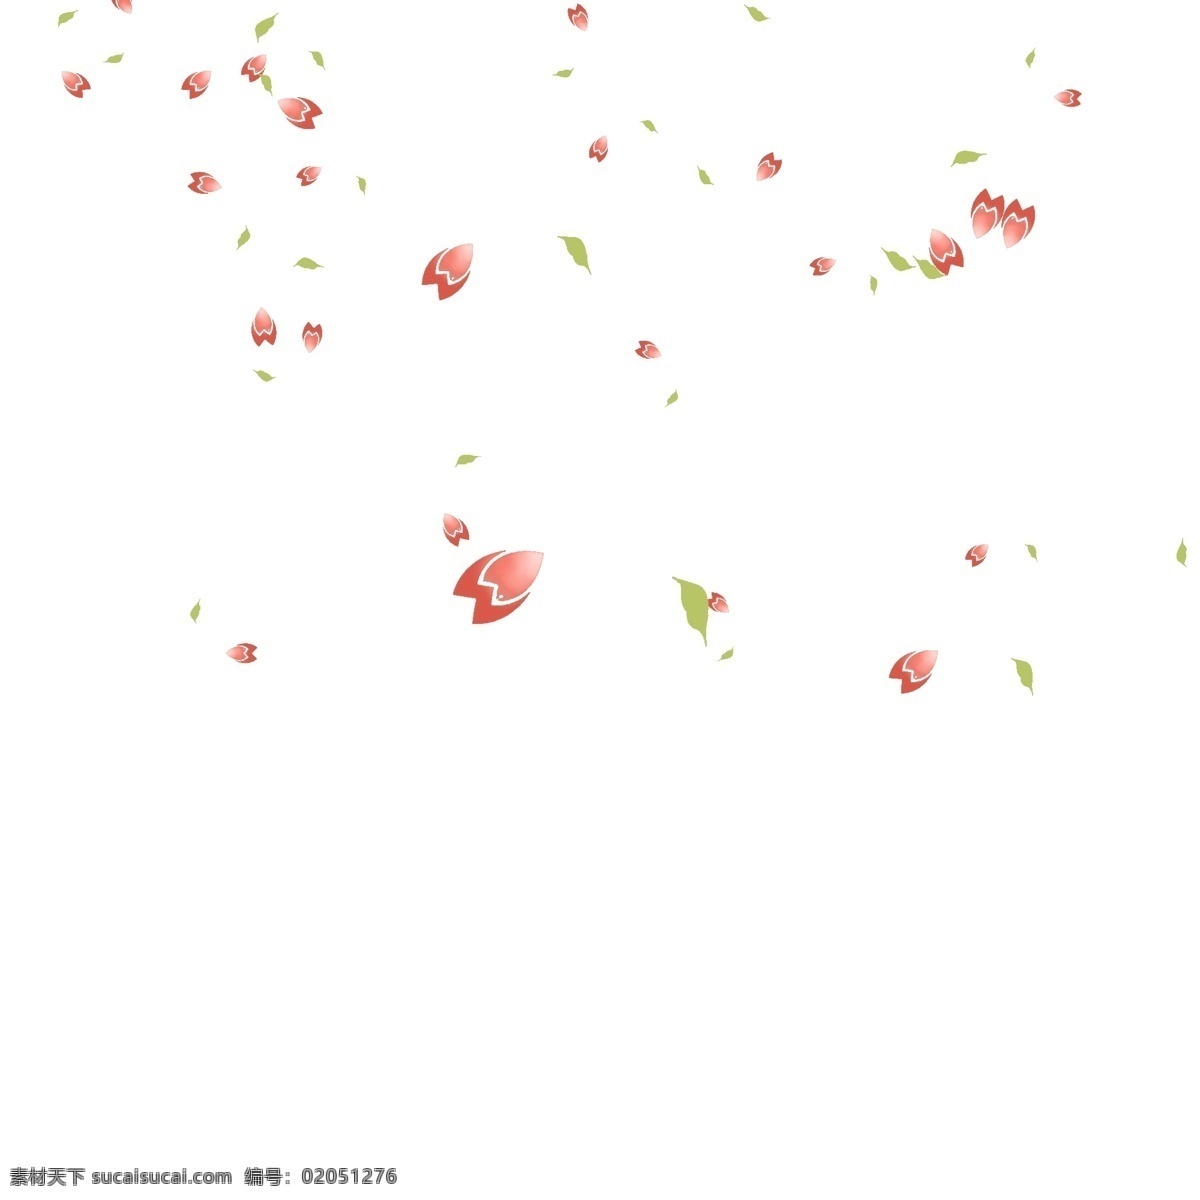 粉色 花瓣 装饰 插画 粉色的花瓣 飘落的花瓣 漂亮的花瓣 创意花瓣 花瓣装饰 花瓣插画 立体花瓣